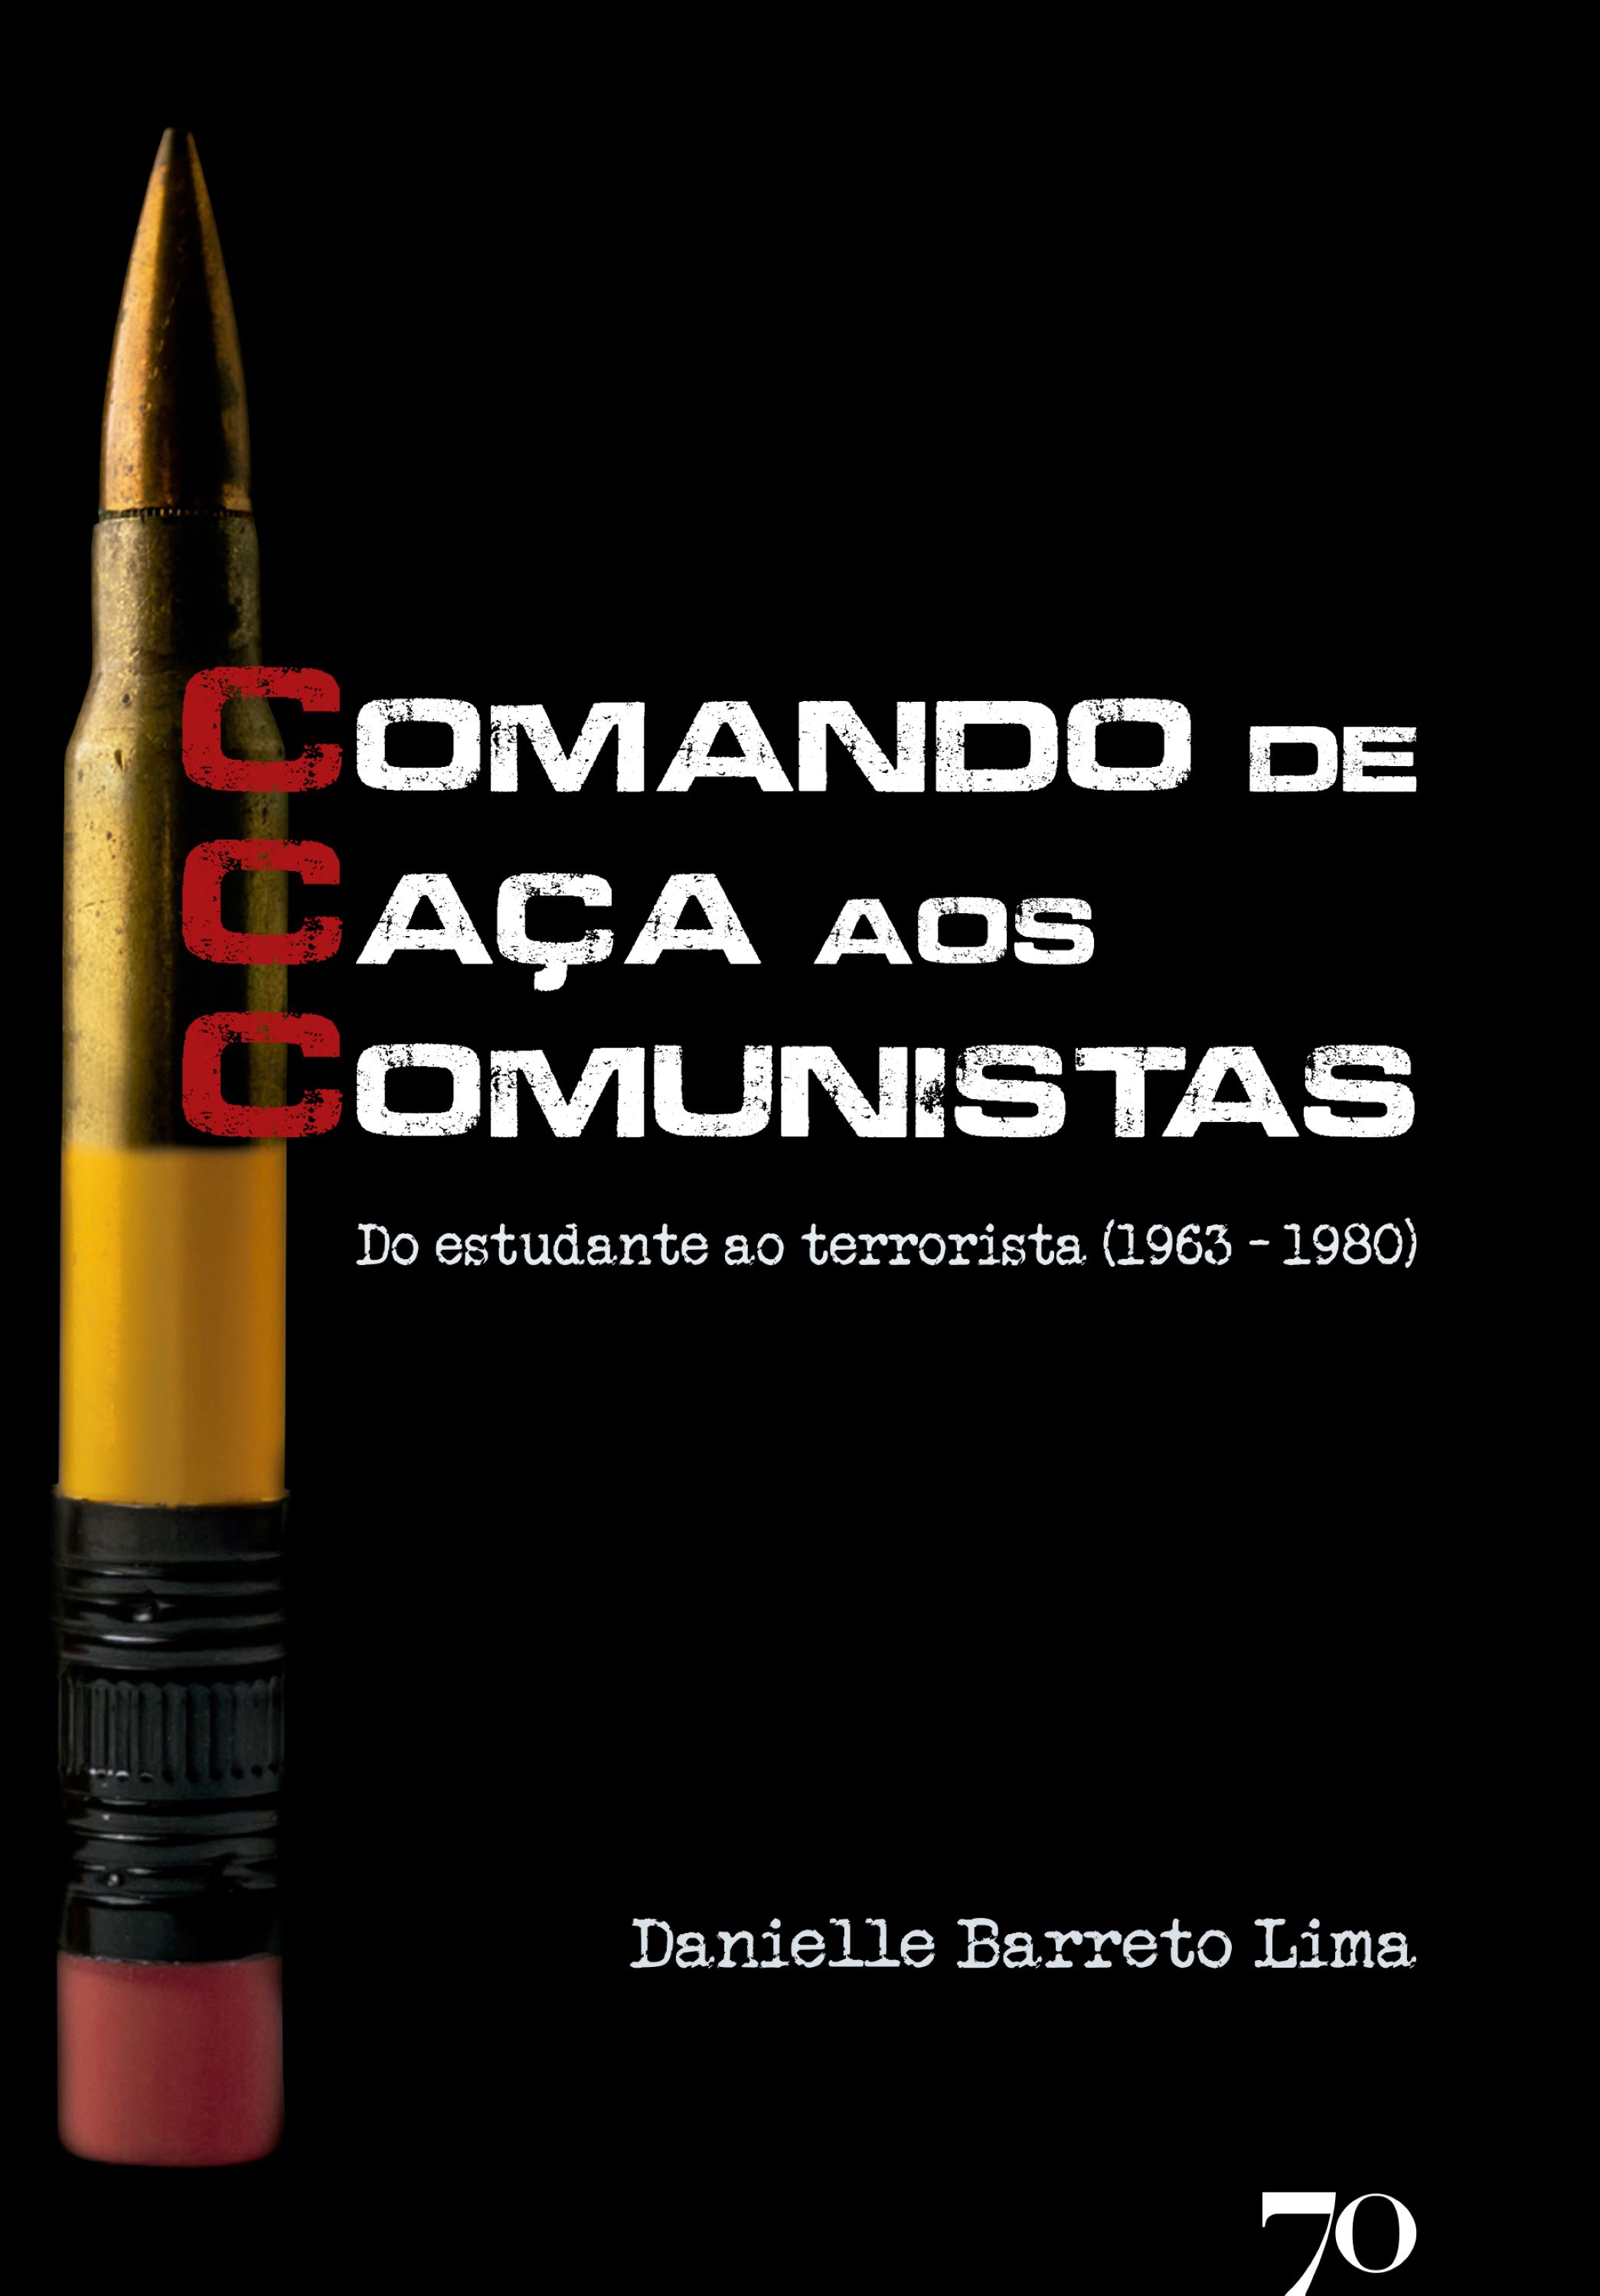 CCC - Comando de Caça aos Comunistas